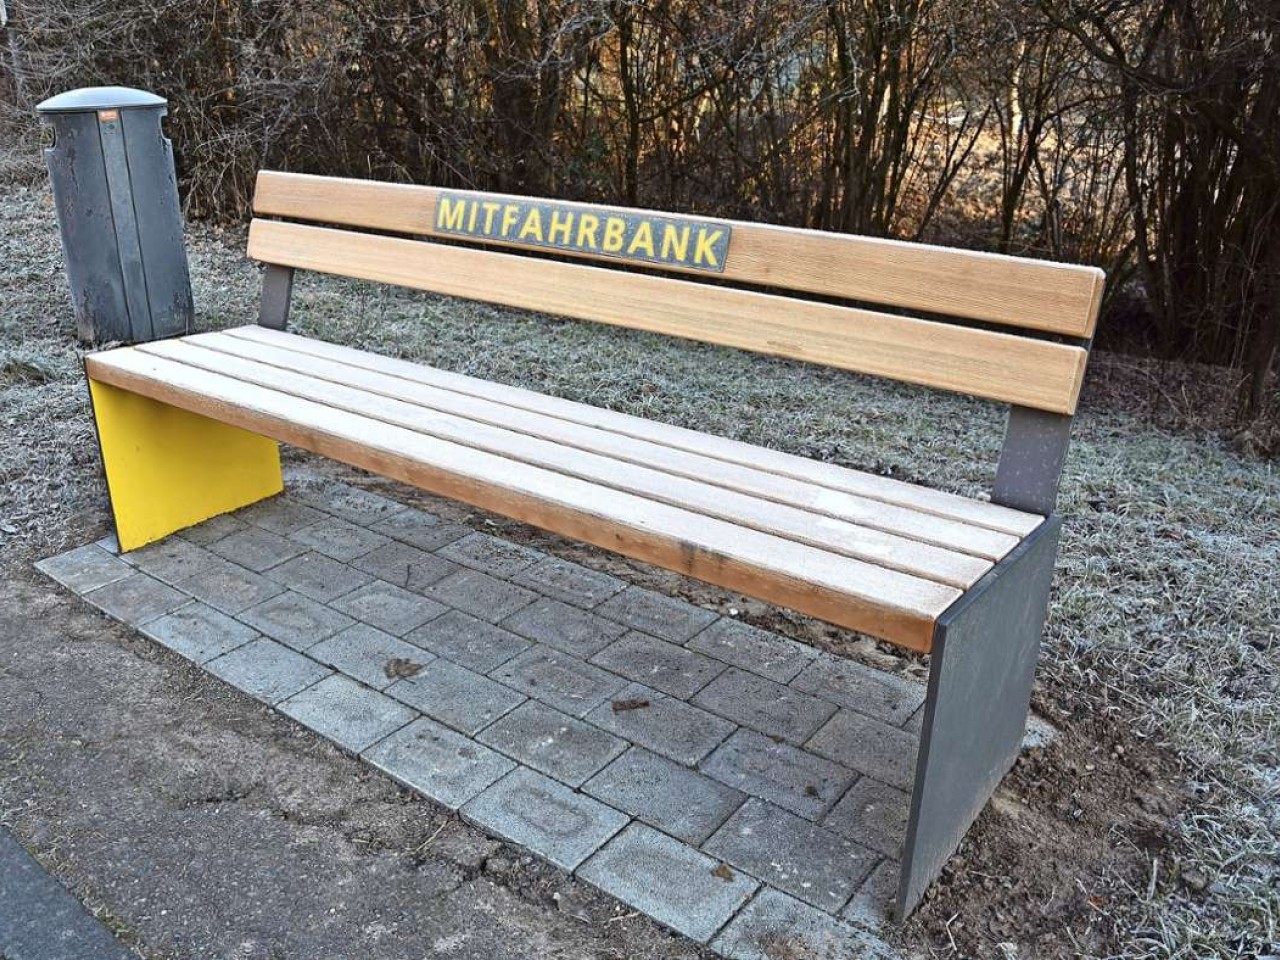 Neue Mitfahrbank in Uhlbach: Per Anhalter auf den Württemberg